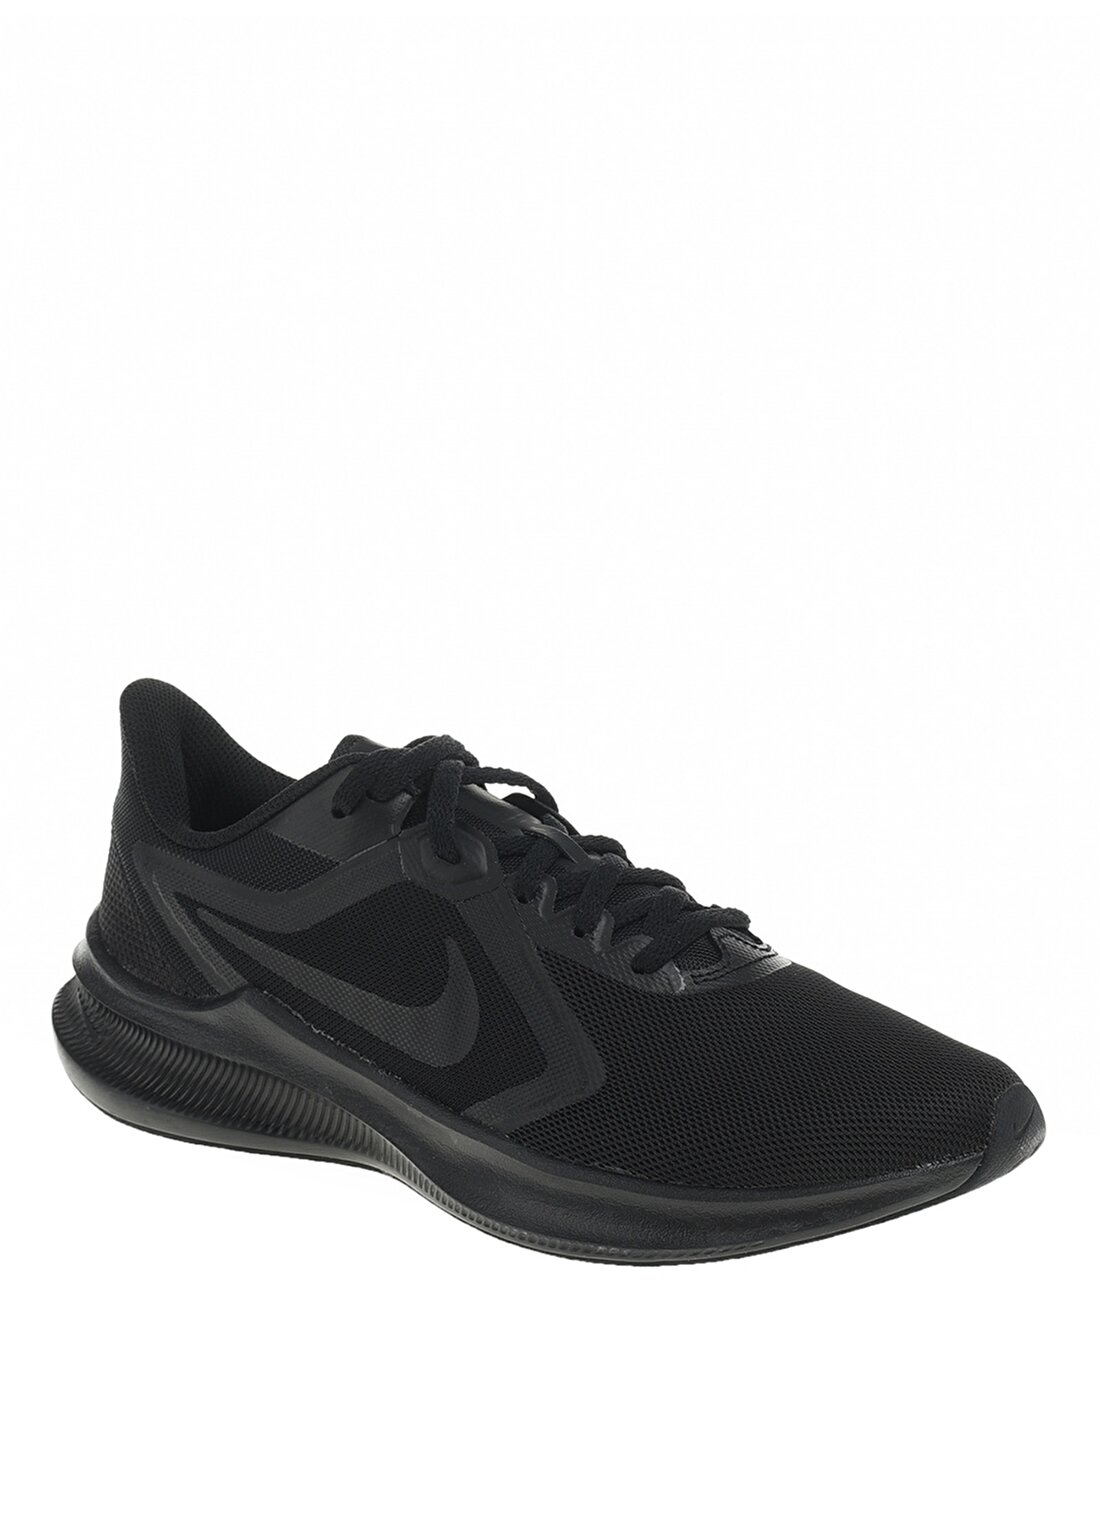 Nike Ci9984-003 Wmns Downshifter 10 Koyu Siyah Kadın Koşu Ayakkabısı